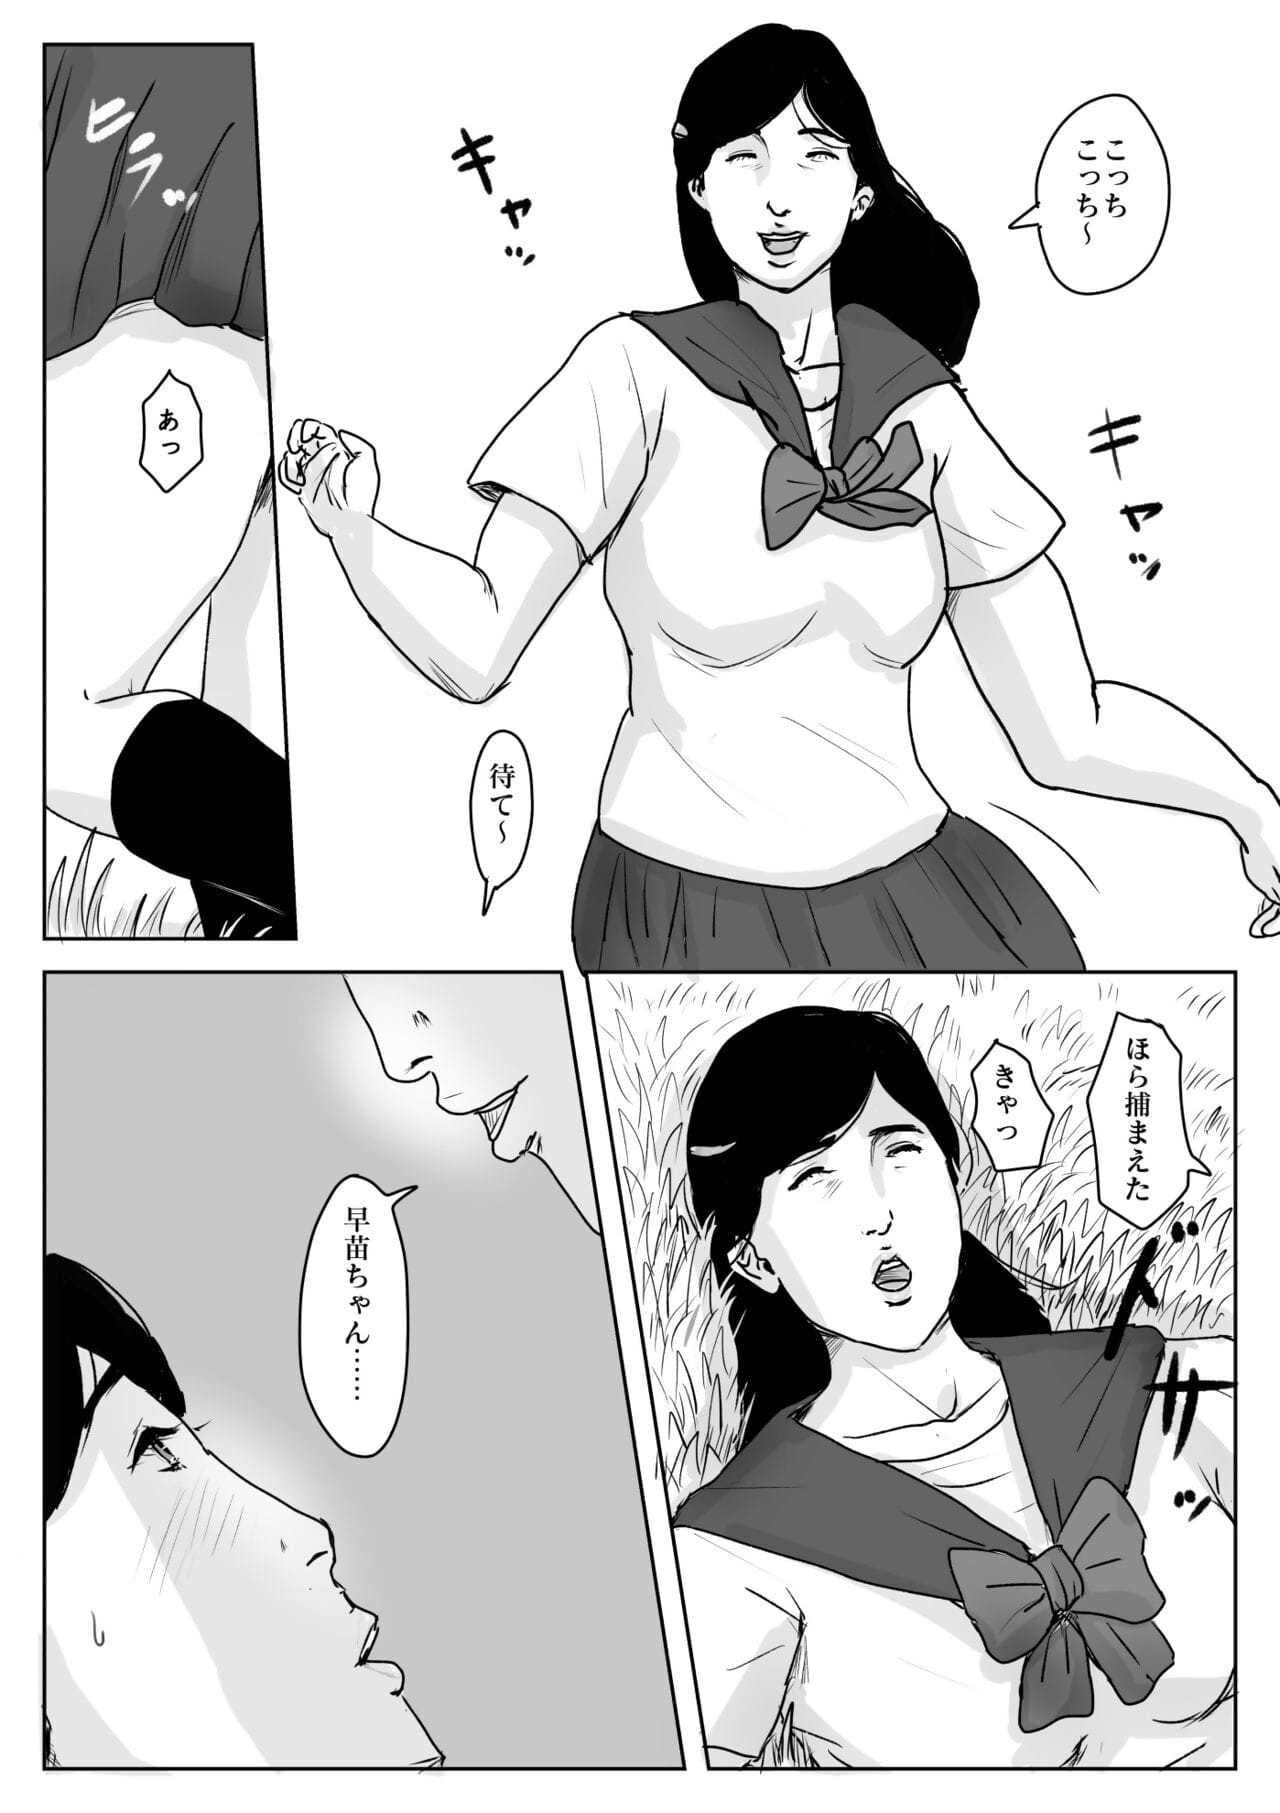 hahah n koishite #3 омоидэ nie Natsu page 1